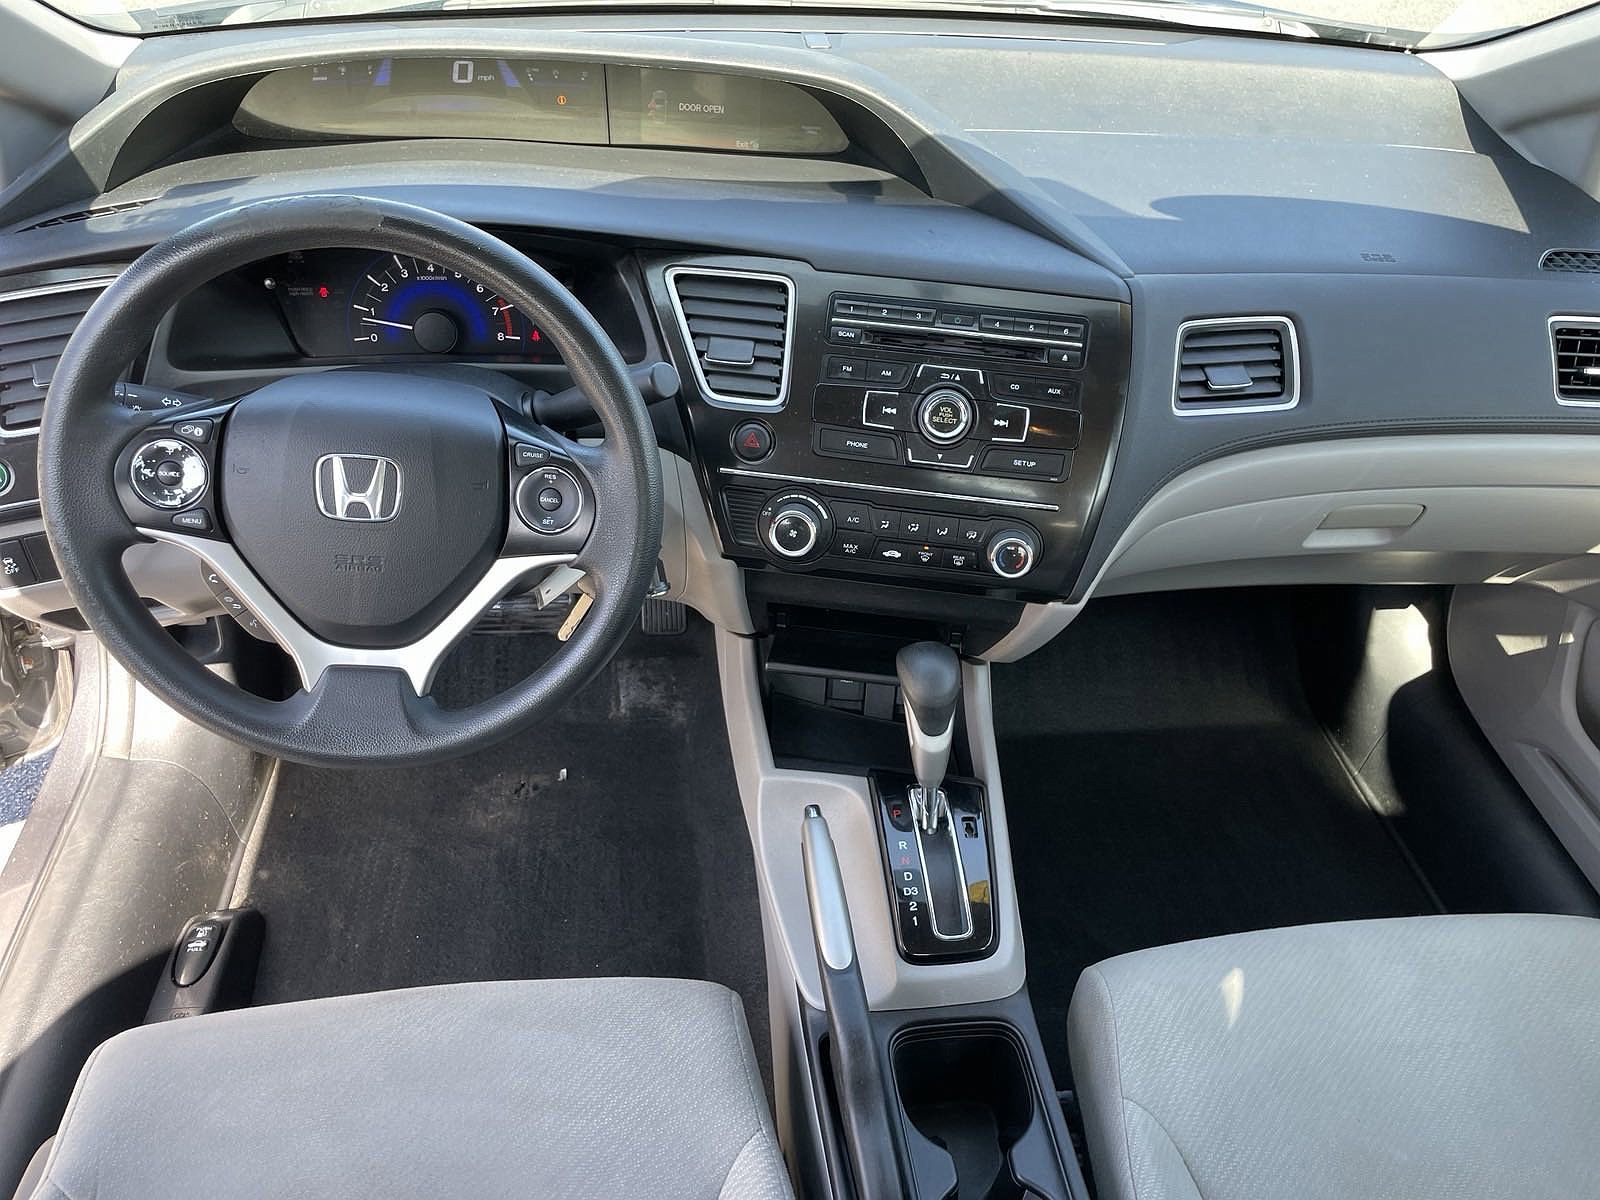 2013 Honda Civic HF image 14